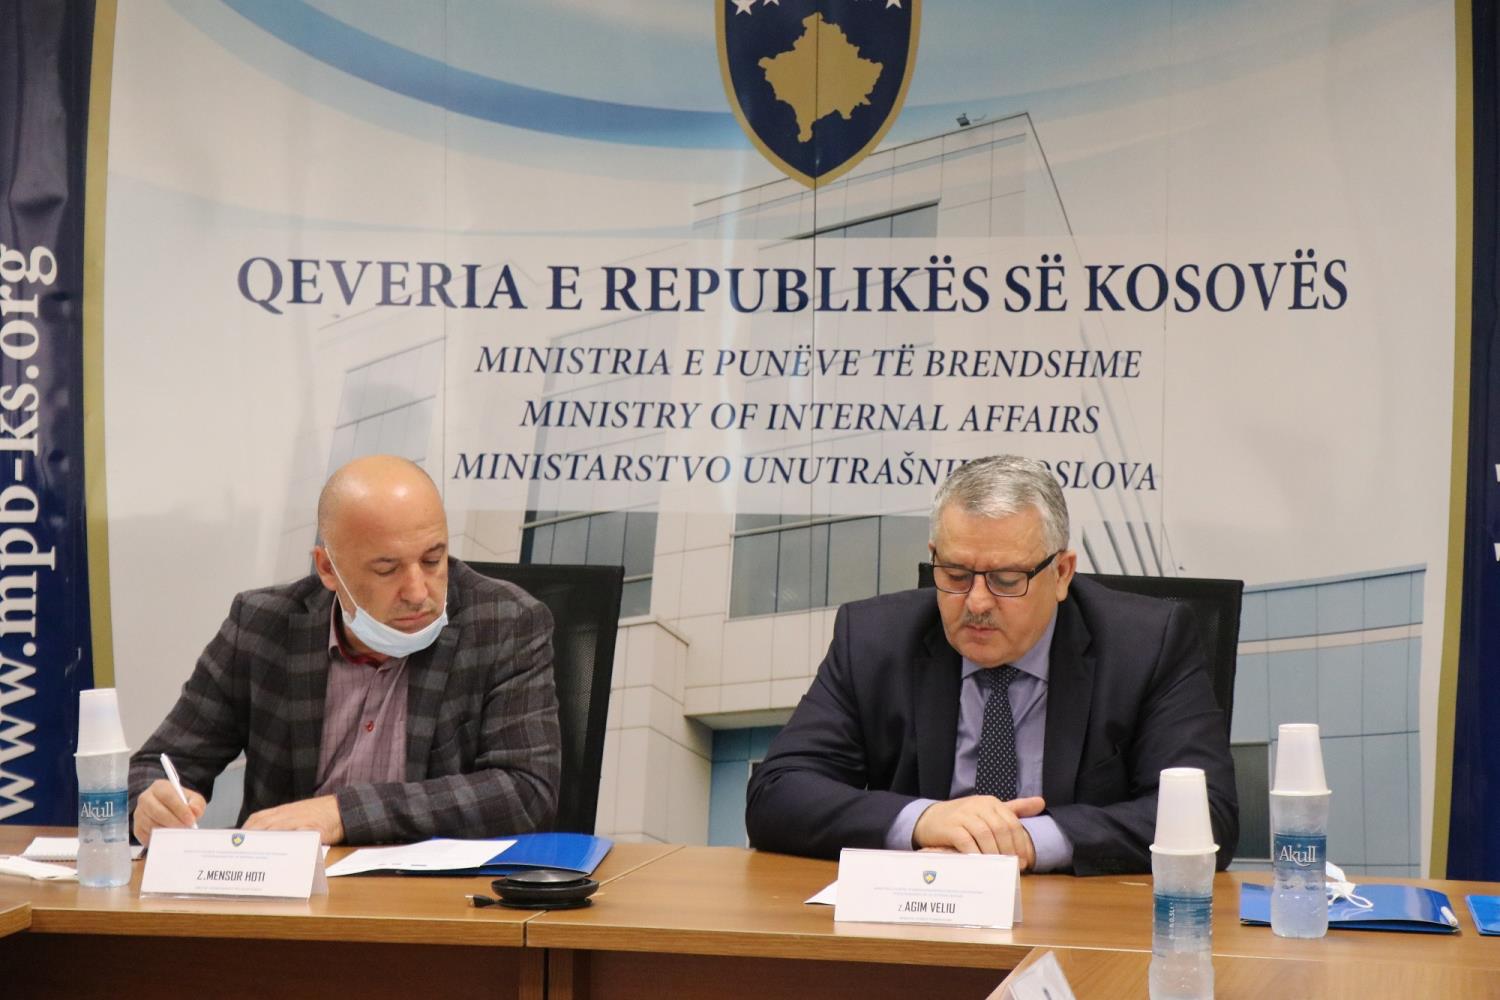 Veliu: Qytetarët e Republikës së Kosovës të qëndrojnë sa më larg armëve ilegale dhe dhunës 